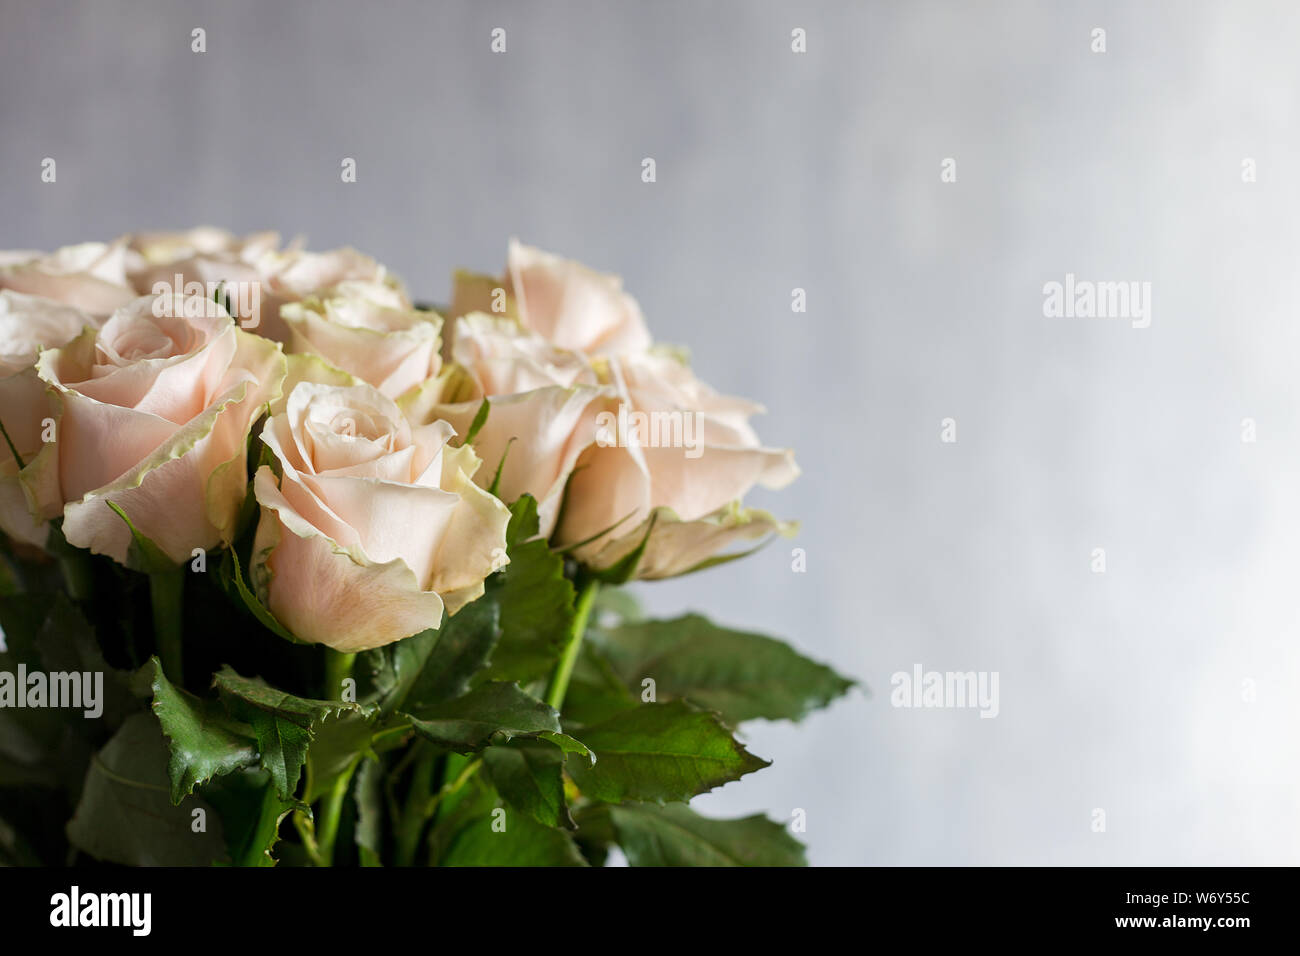 Carte de souhaits avec des roses blanches sur fond gris. Concept d'arrière-plan de l'espace libre Banque D'Images